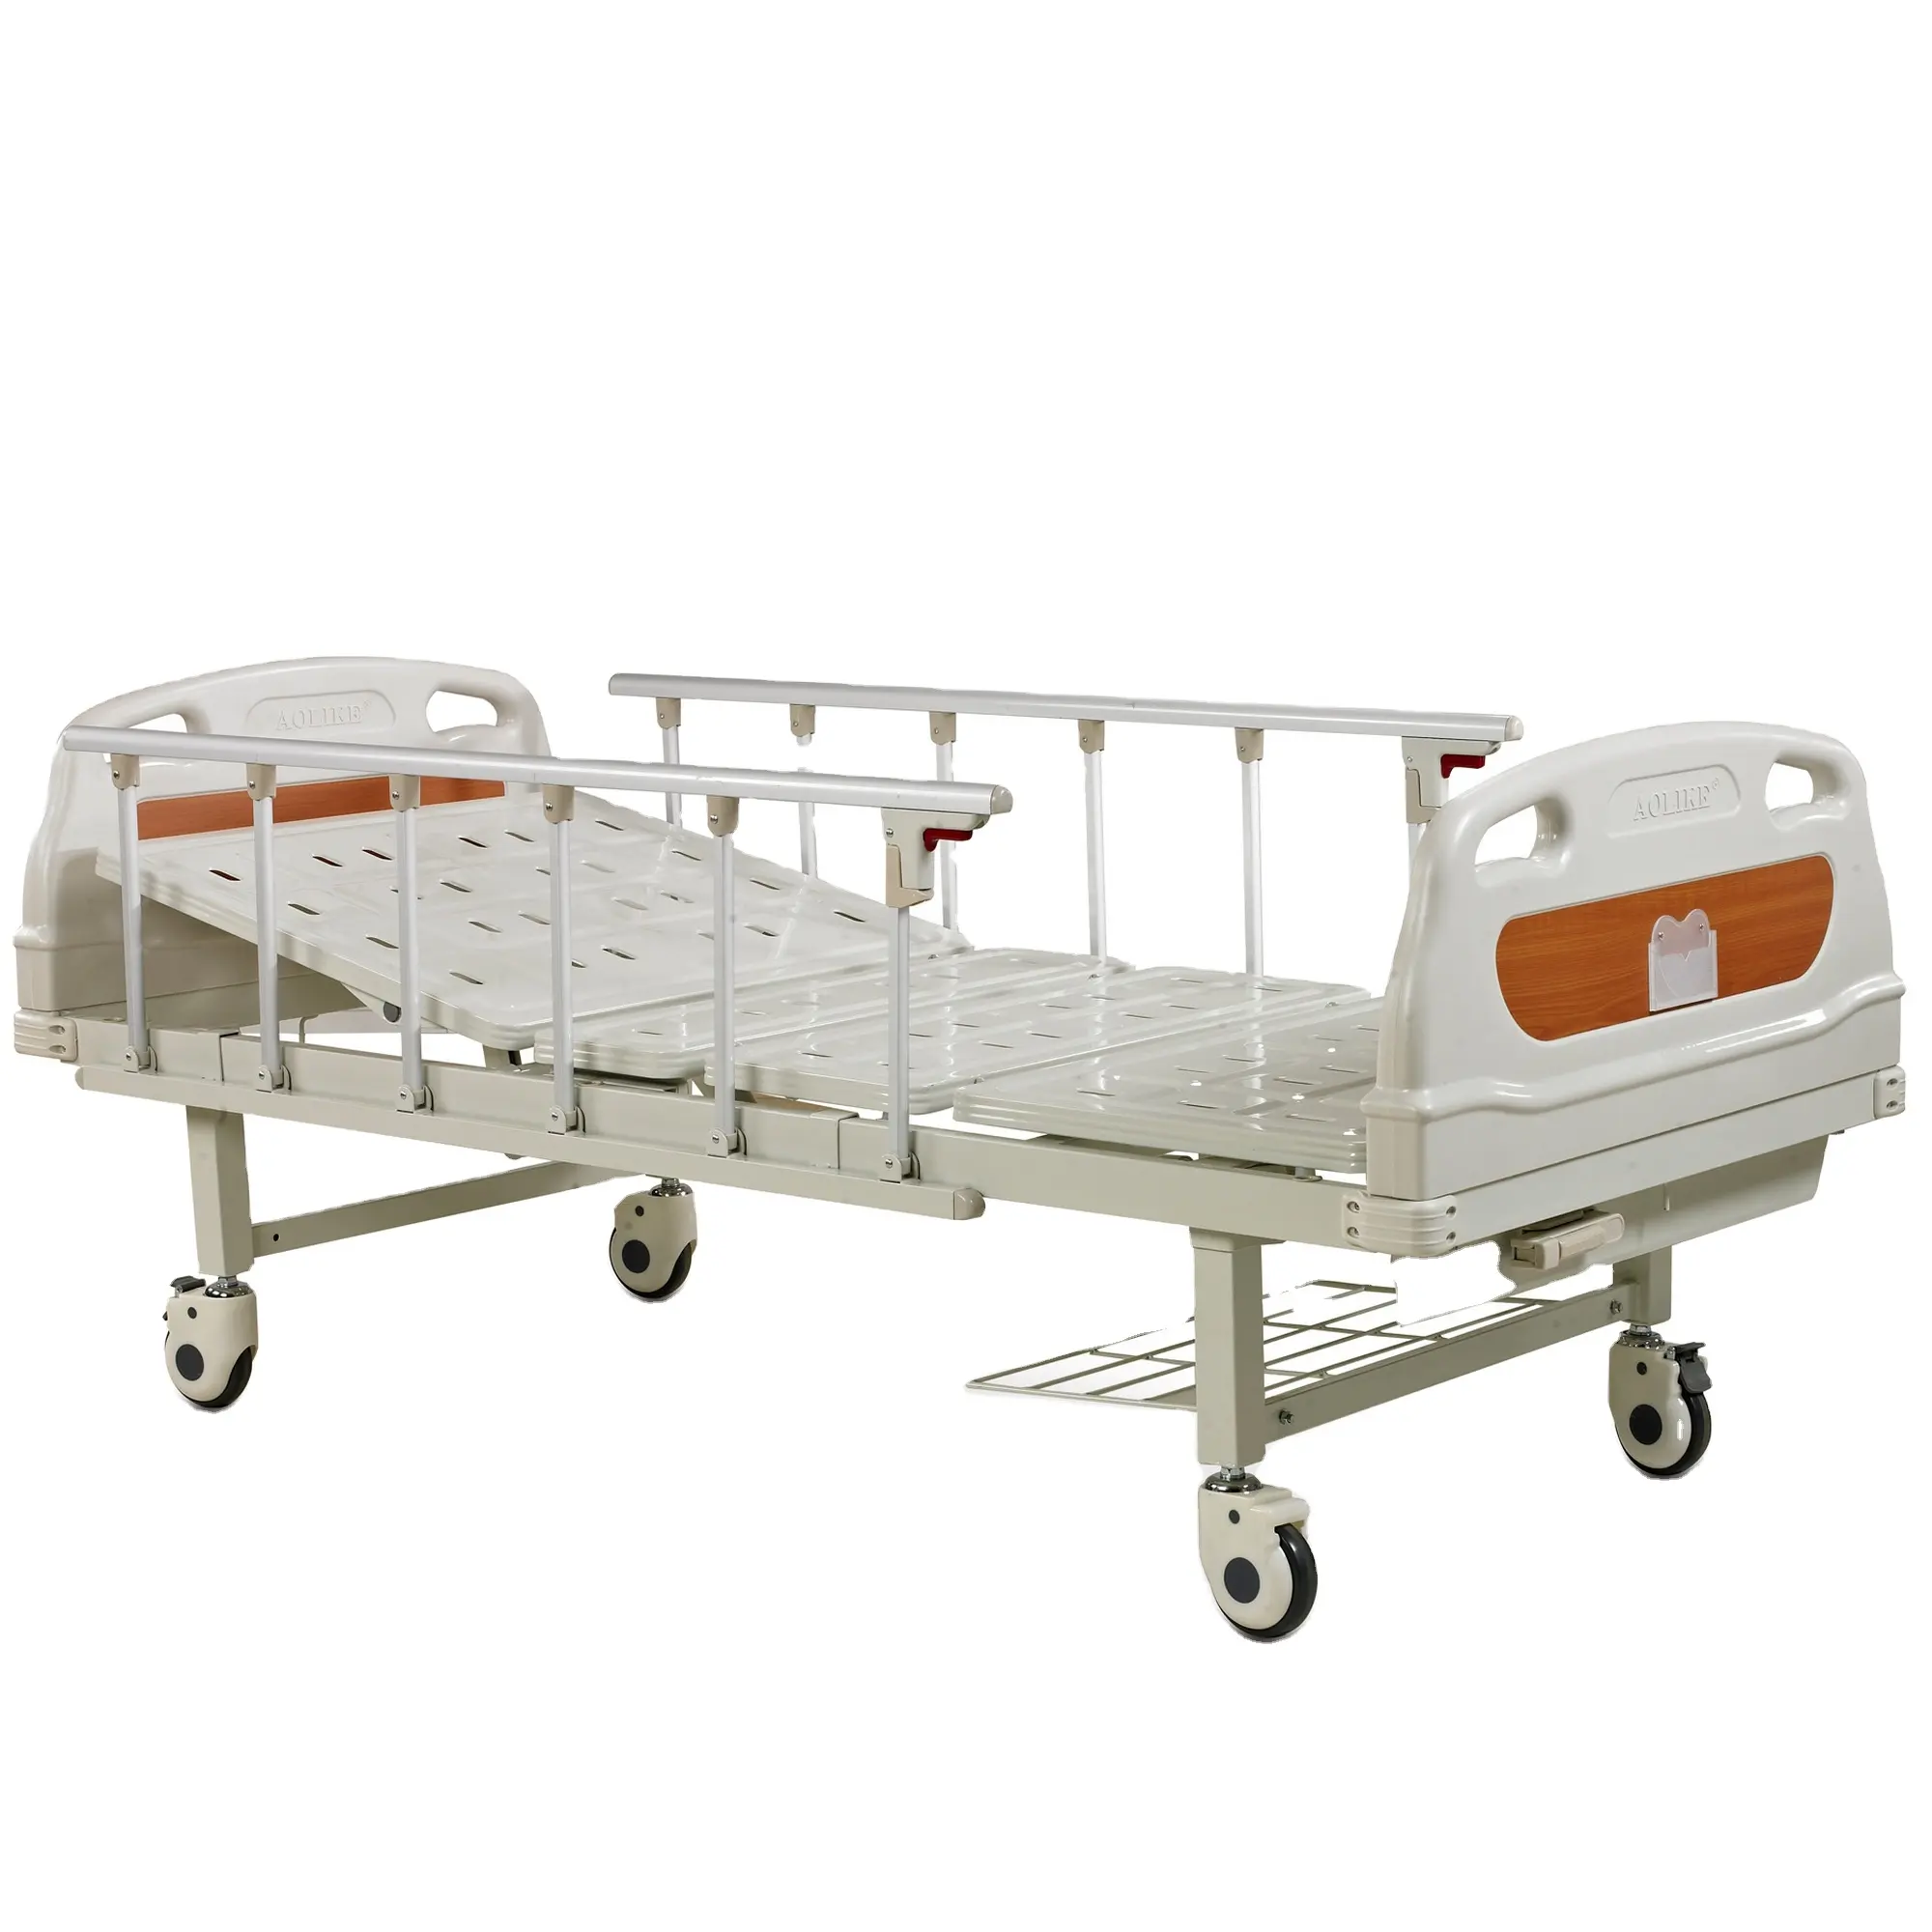 الأكثر مبيعا جيد سعر أثاث المستشفيات مصنعين اثنين السواعد دليل سرير طبي مع 2 وظائف